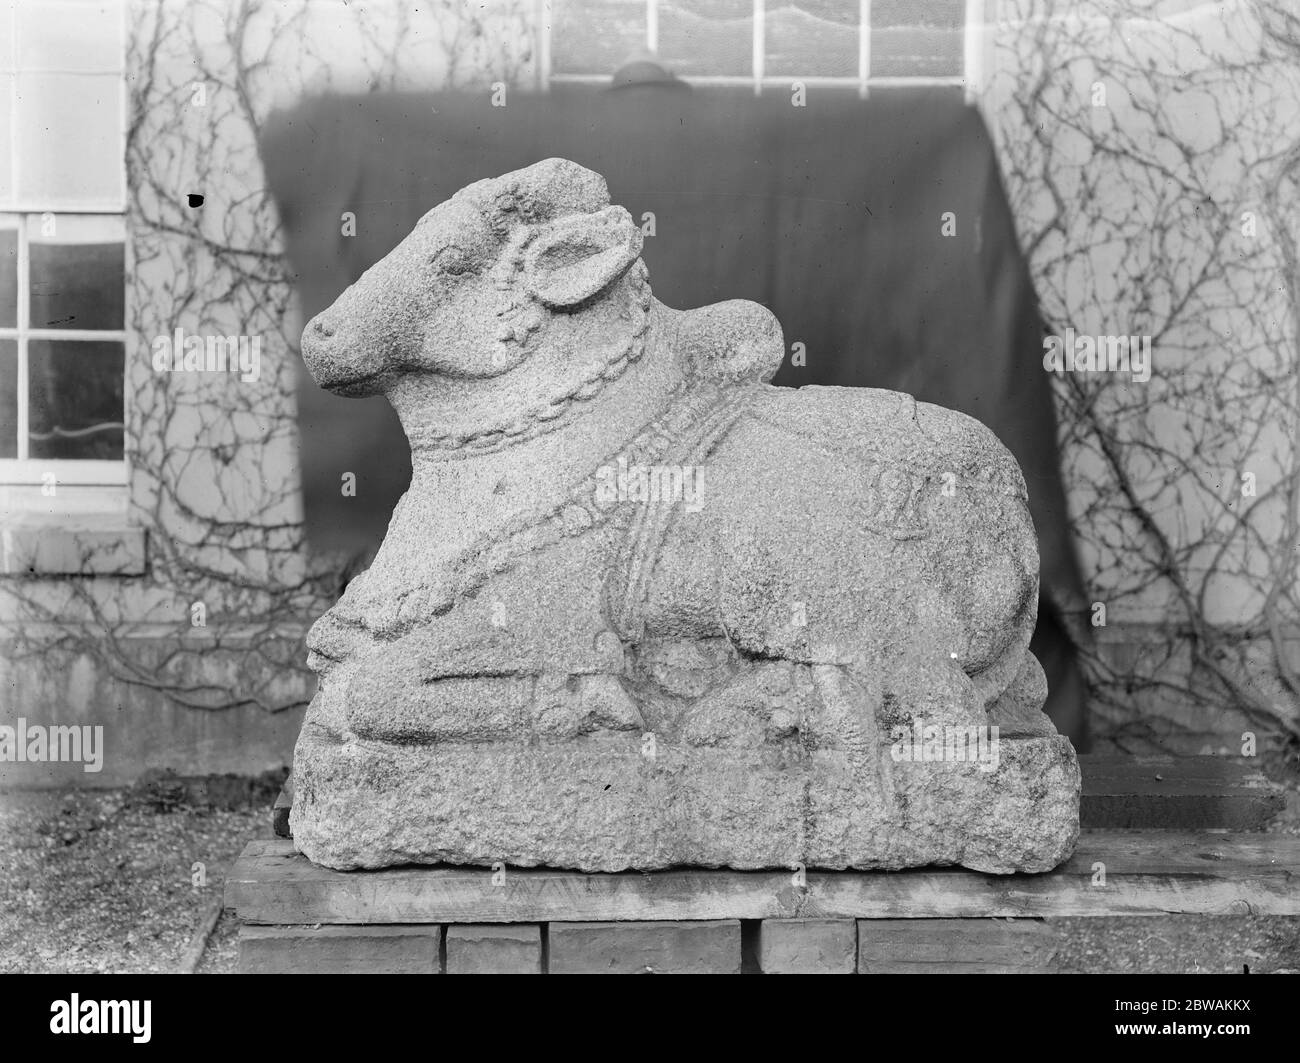 Wunderbare Reliquien für die nationale Sammlung das britische Museum hat von Mr. A Bullard, einem bekannten Antiquar von Newport Pagnell, zwei sehr interessante indische Idole aus Stowe House erworben. Herr Bullard und ein "Sacred Bull", der vor 150 Jahren von einem der Herzöge von Buckingham am 4. März 1923 aus Indien gebracht wurde Stockfoto